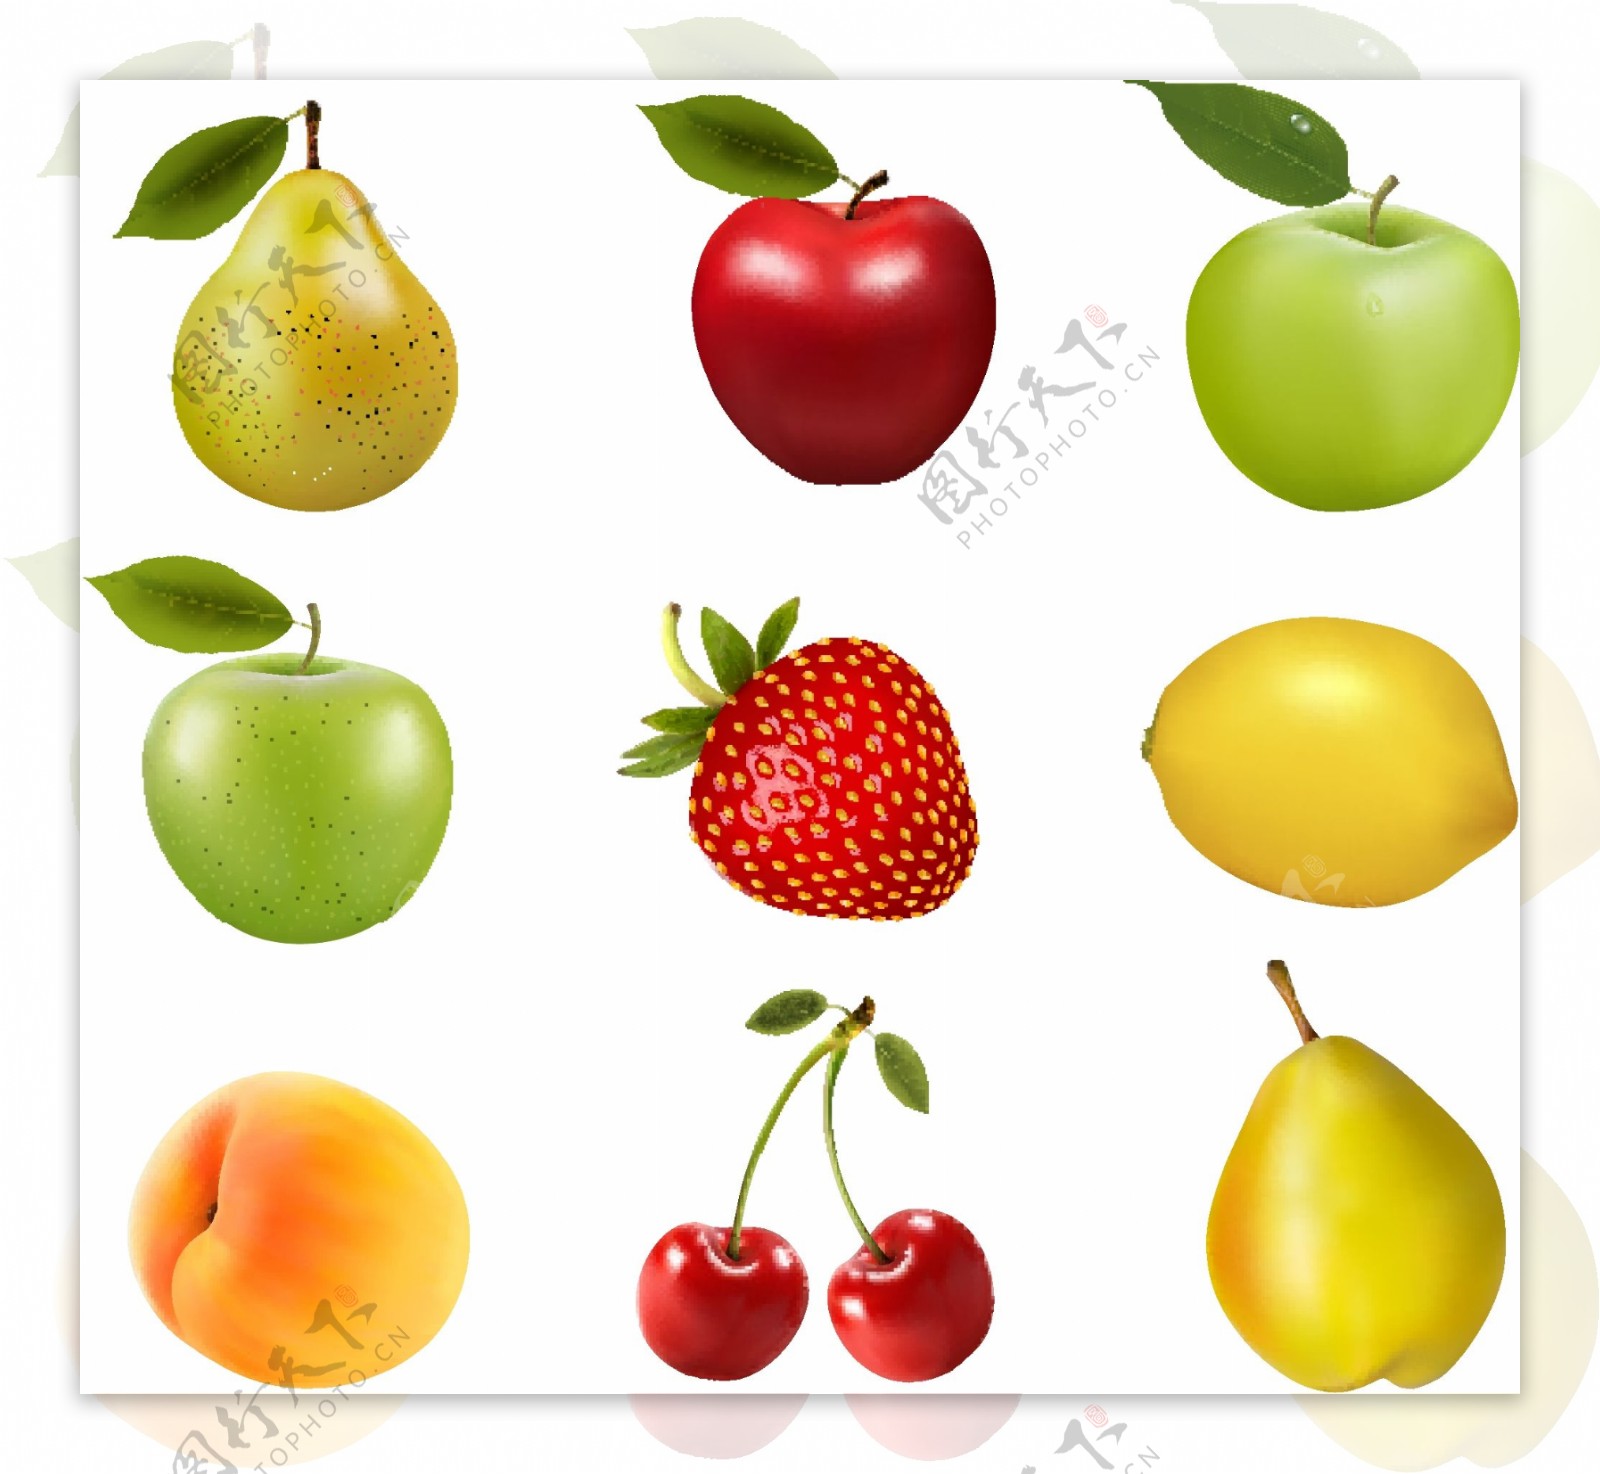 整齐排列的各种水果矢量素材